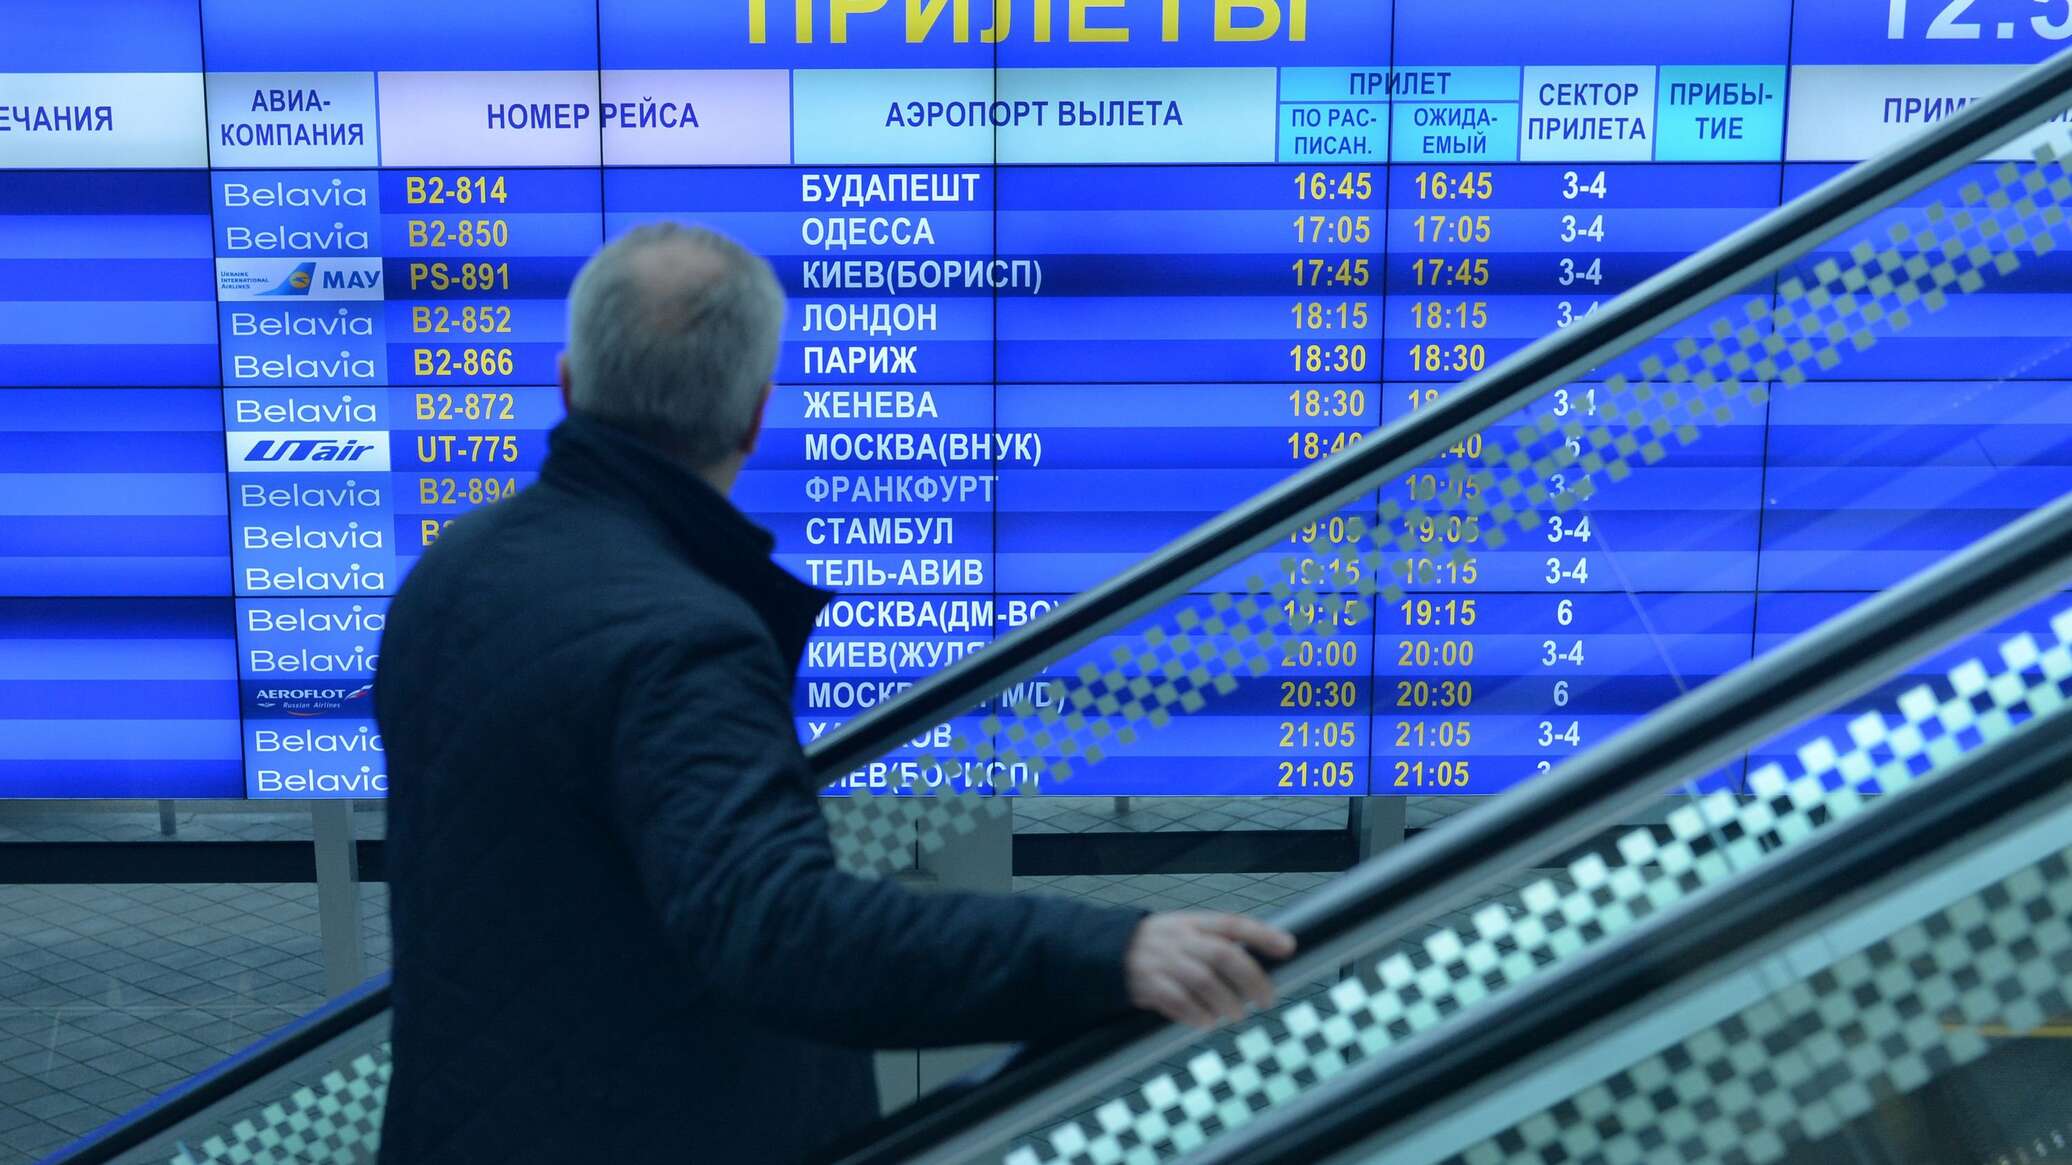 Сегодня прилеты в минском аэропорту. Аэропорт Минск табло.